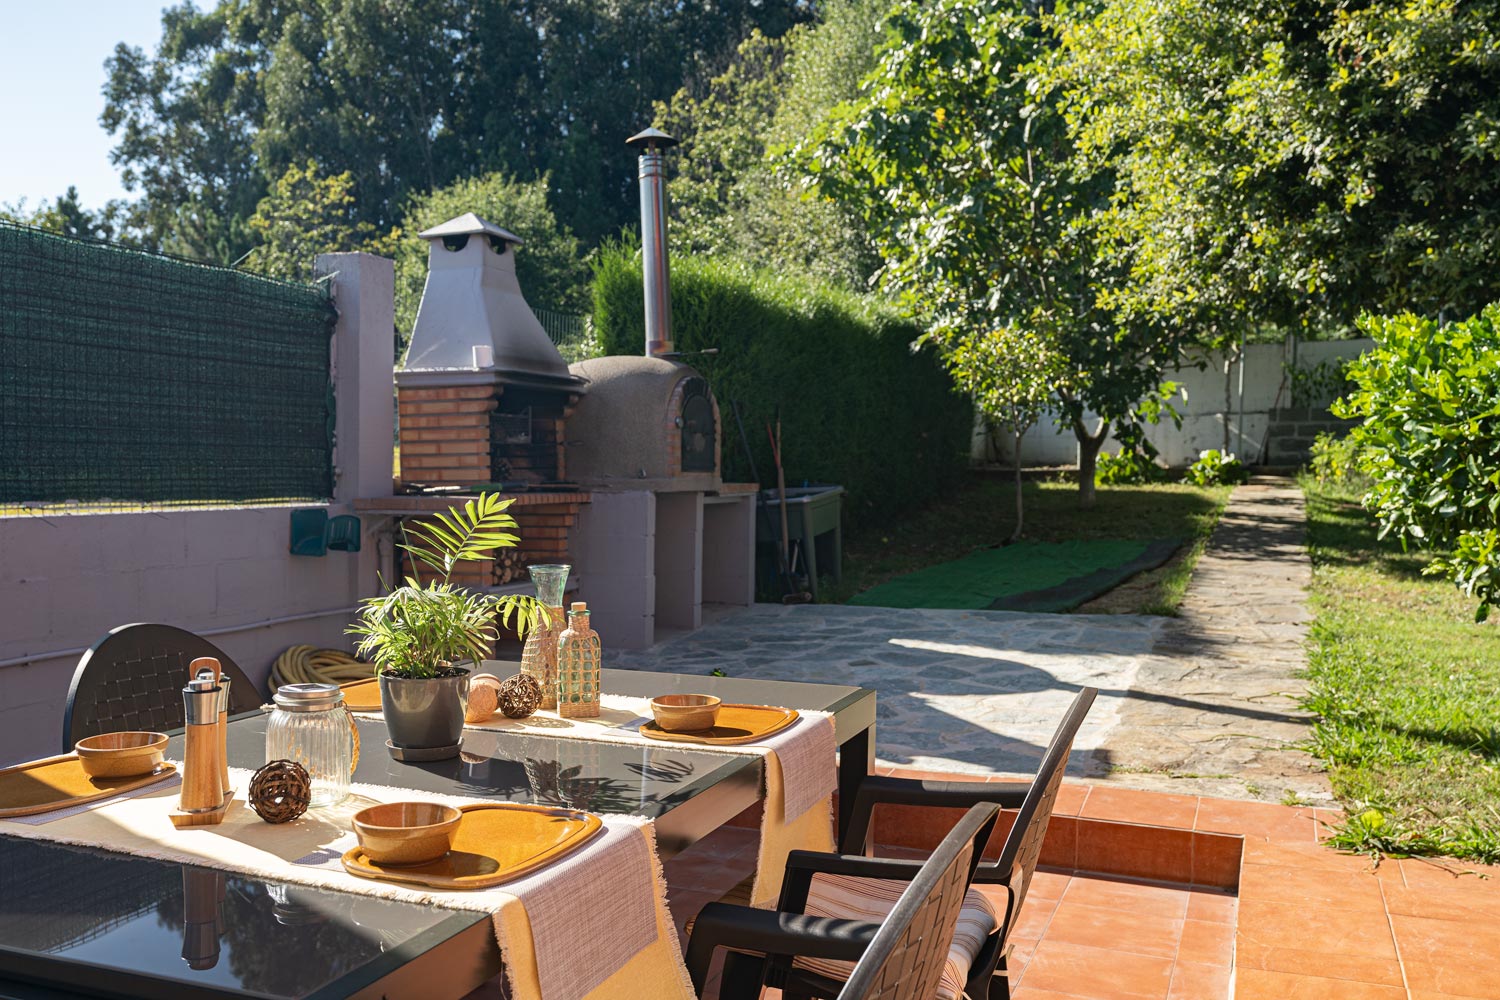 Terraza con mesa y sillas, junto a zona de barbacoa en el jardín